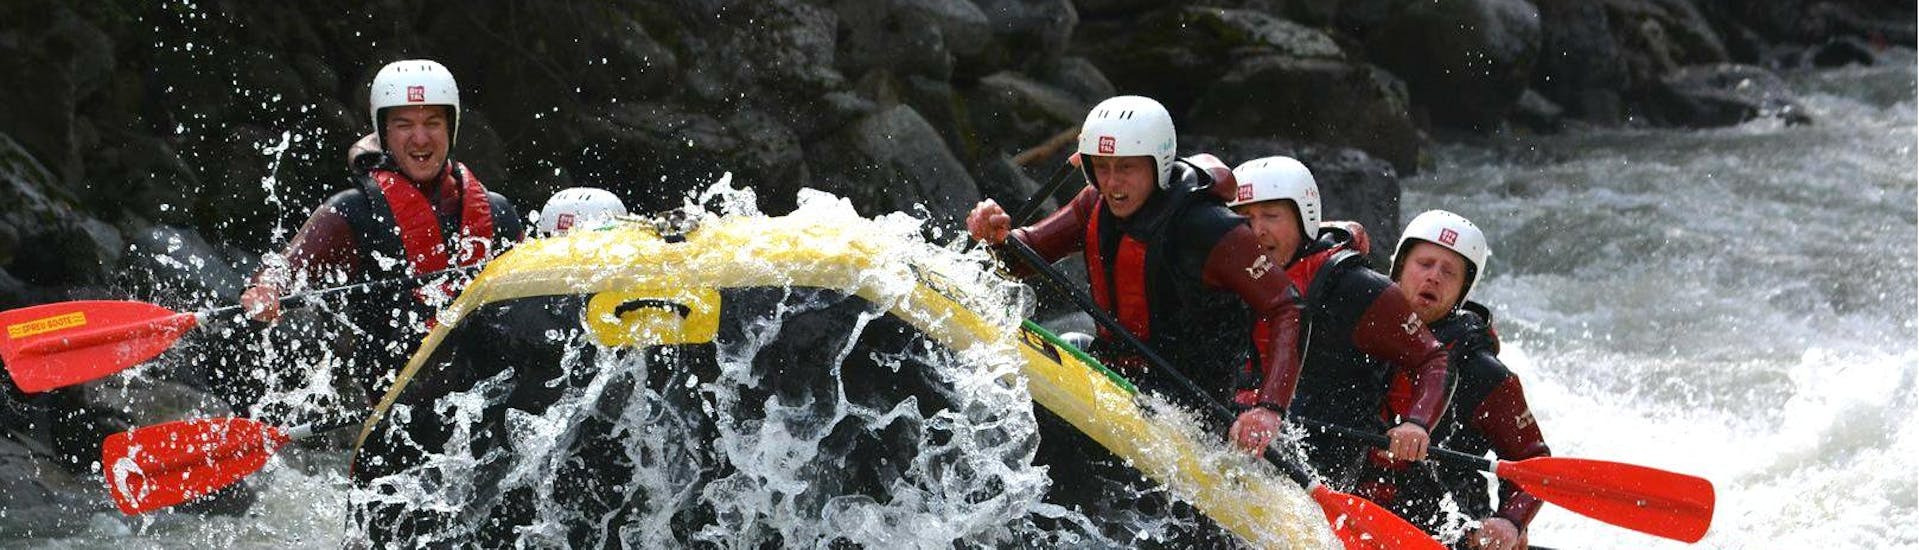 Rafting expert à Haiming - Innsbruck avec CanKick - Ötztal.